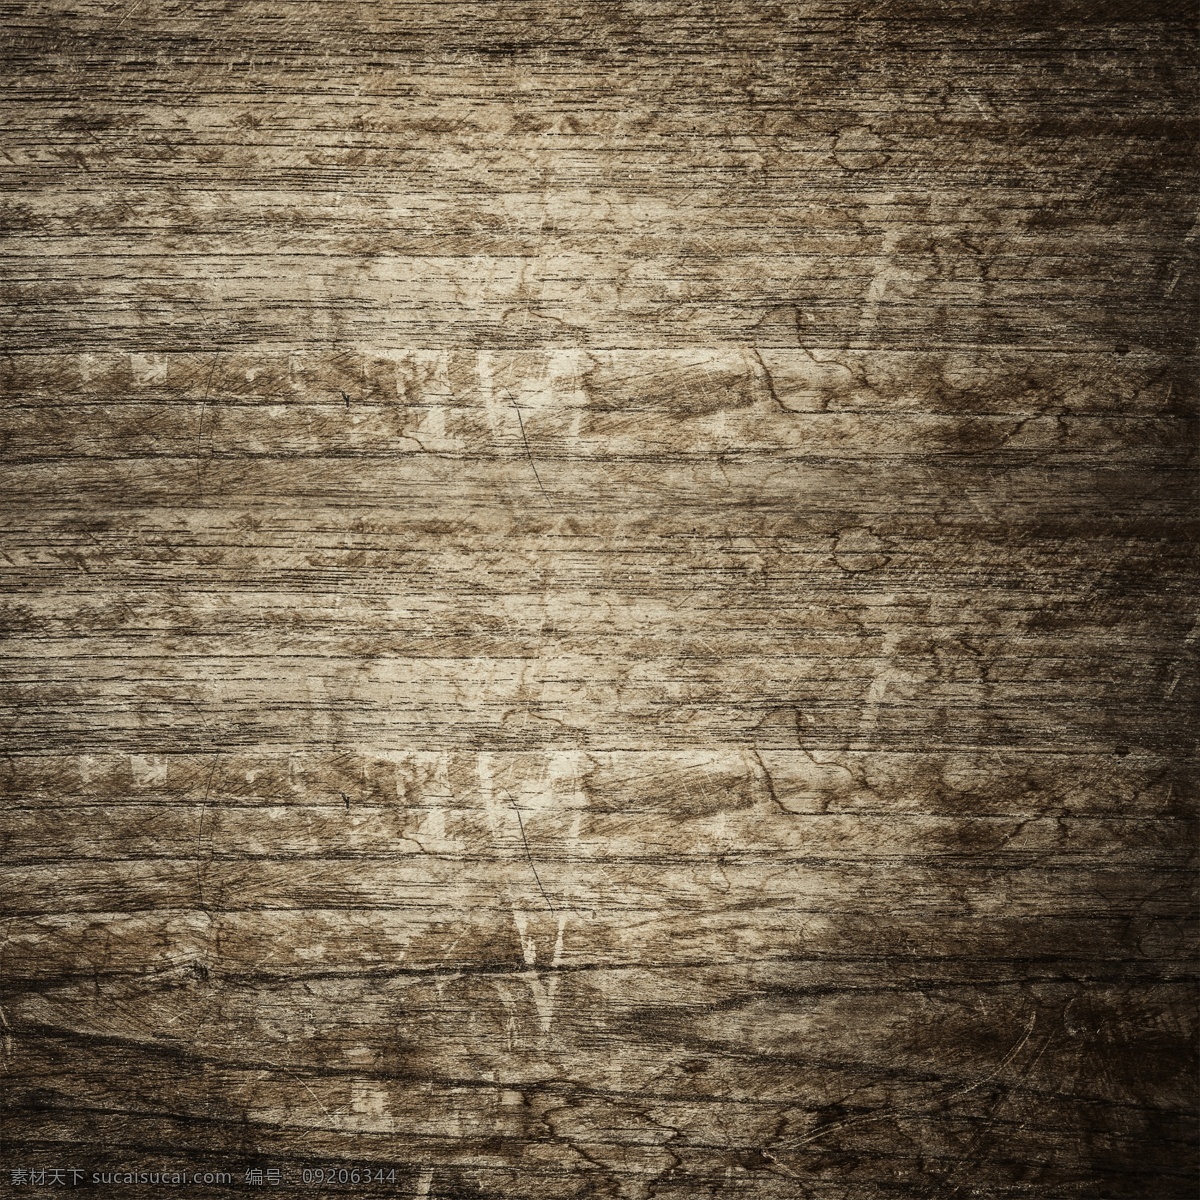 木纹背景 木板背景 纹路 木质 木纹 木板 材质 纹理 木制 高清 tiff 桌面 壁纸 拍摄 摆拍 高清摄影 木板摄影 木纹摄影 生物世界 树木树叶